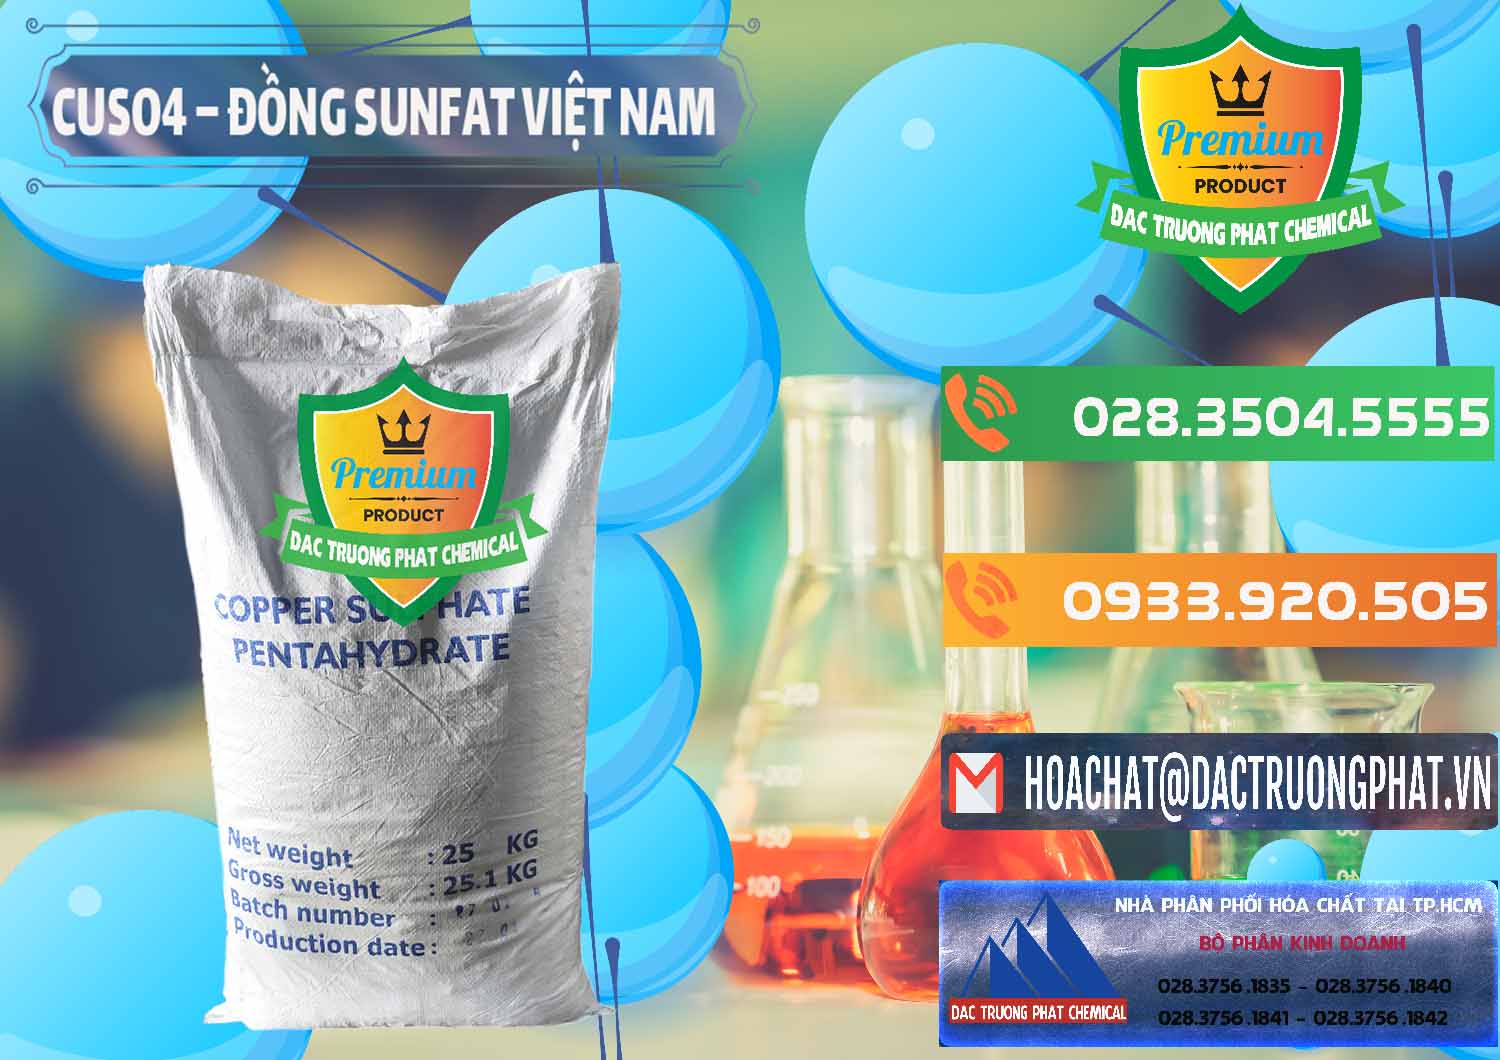 Công ty chuyên bán & cung cấp CuSO4 – Đồng Sunfat Dạng Bột Việt Nam - 0196 - Cty phân phối & cung ứng hóa chất tại TP.HCM - hoachatxulynuoc.com.vn